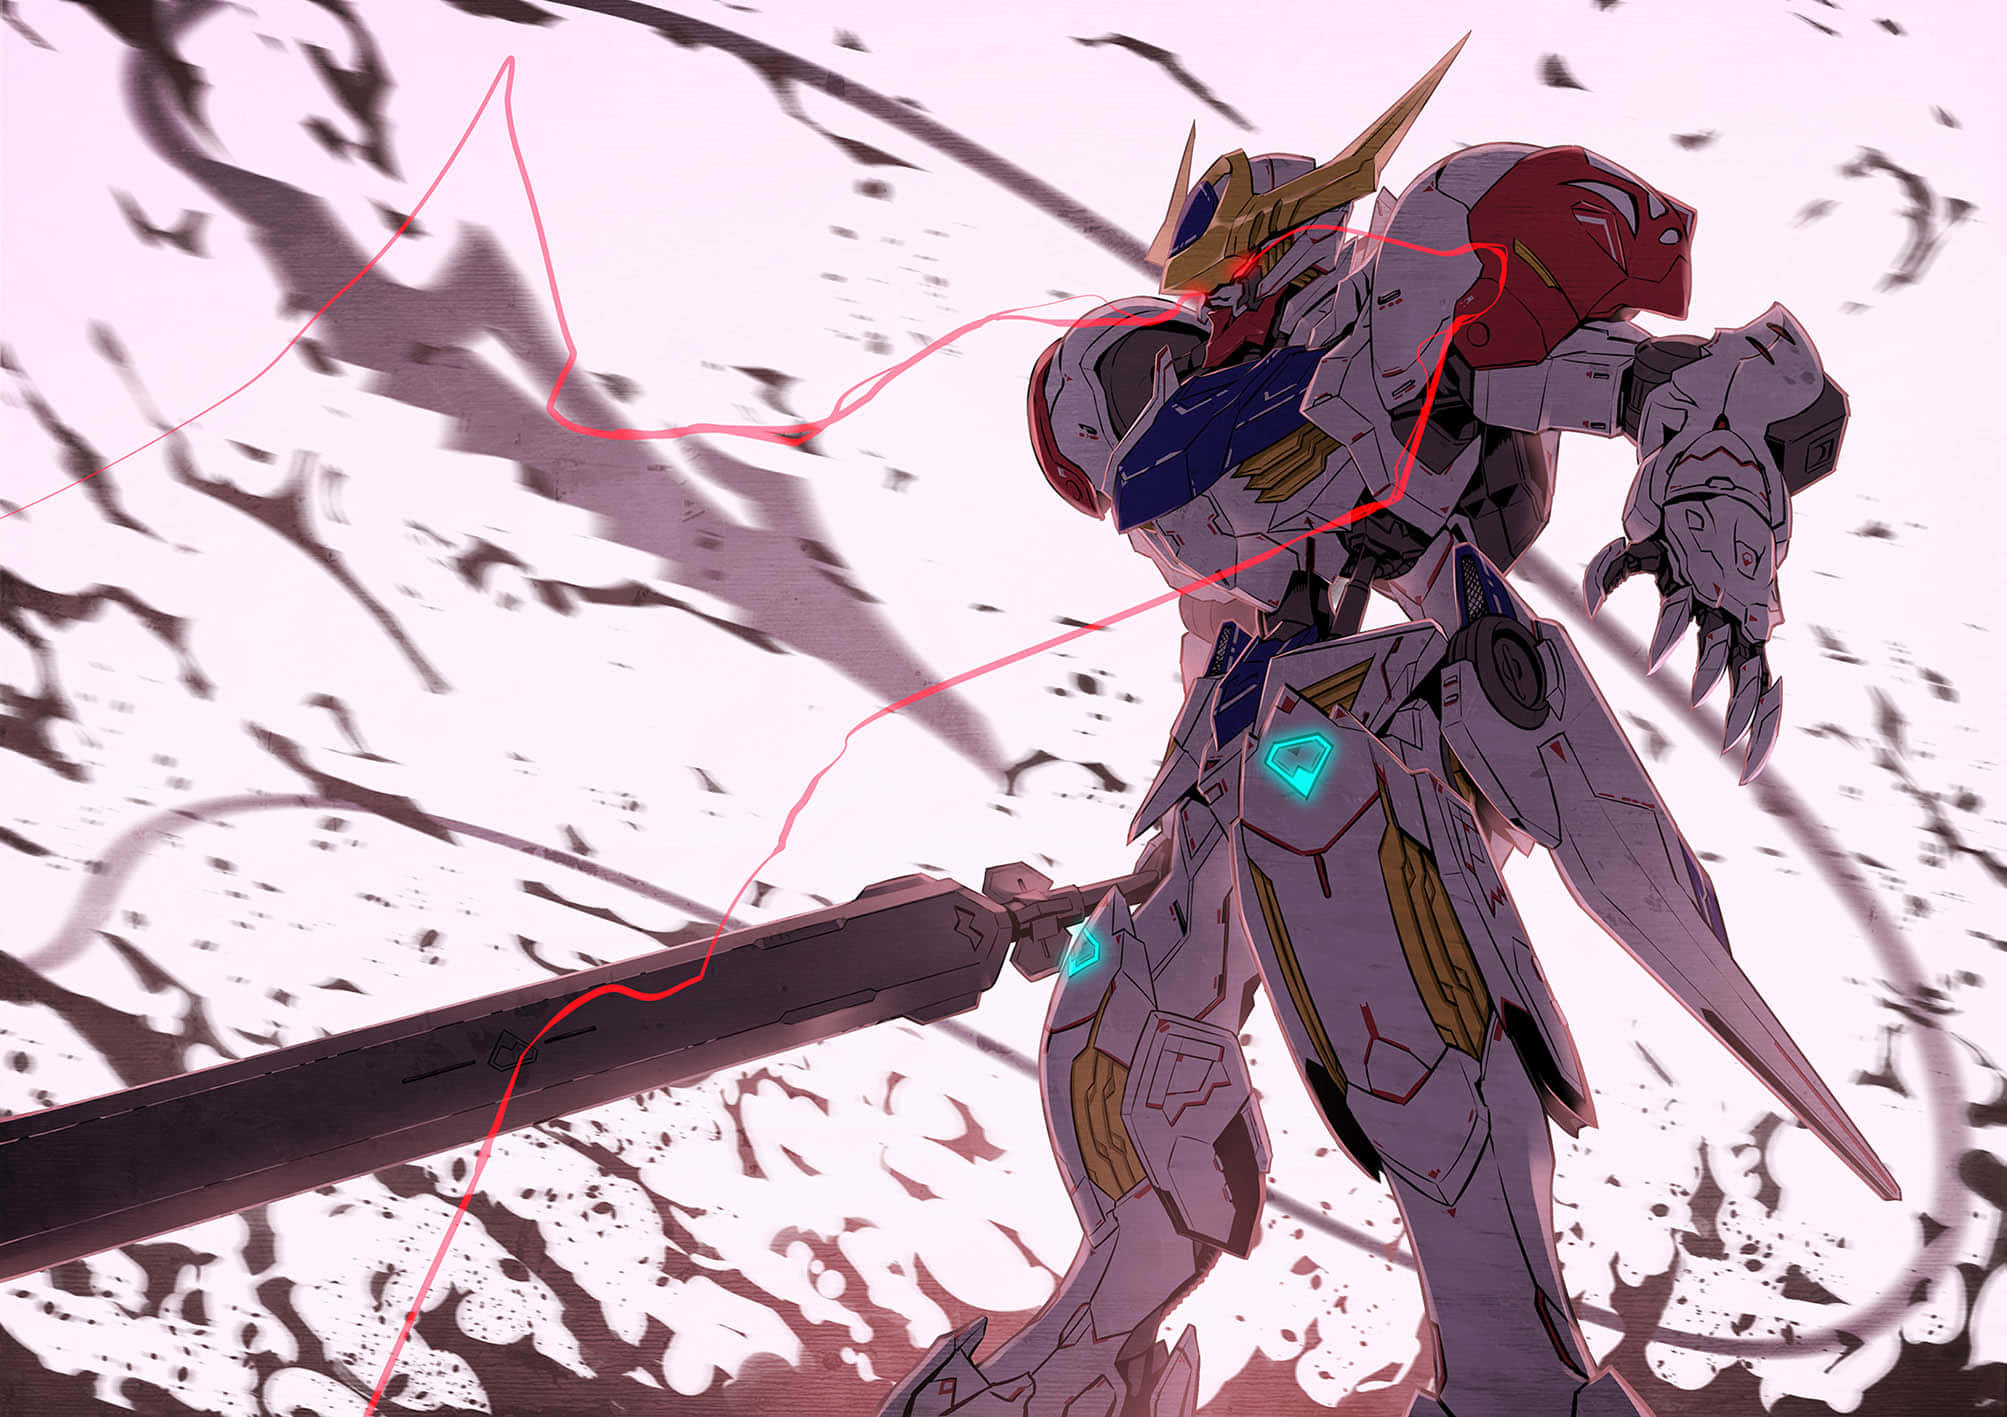 A Glimpse of Kazuma Aila, a Mobile Suit Gundam Pilot Wallpaper